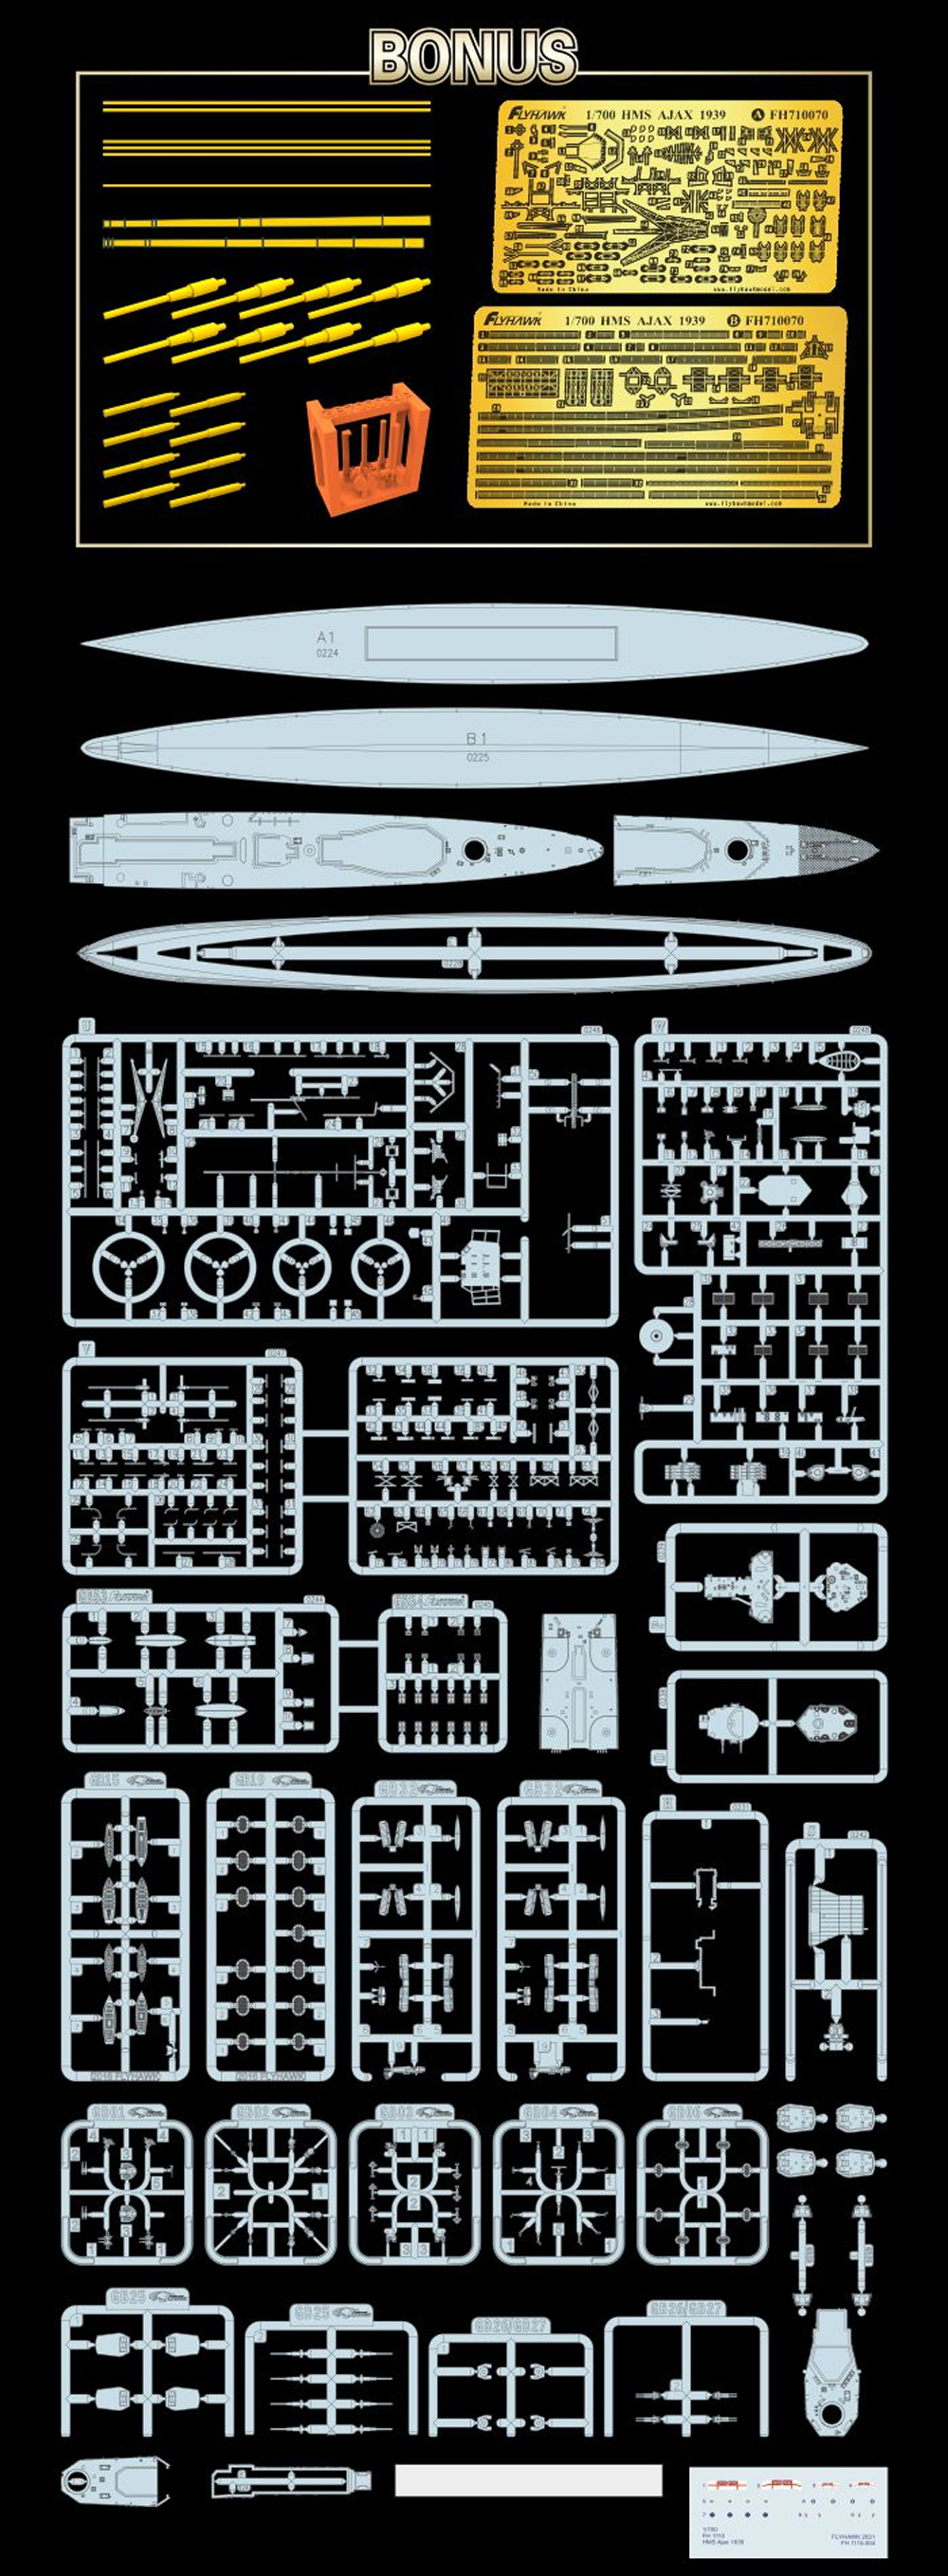 イギリス海軍 軽巡洋艦 エイジャックス 1939 豪華版 プラモデル (フライホーク 1/700 艦船 No.FH1110S) 商品画像_2